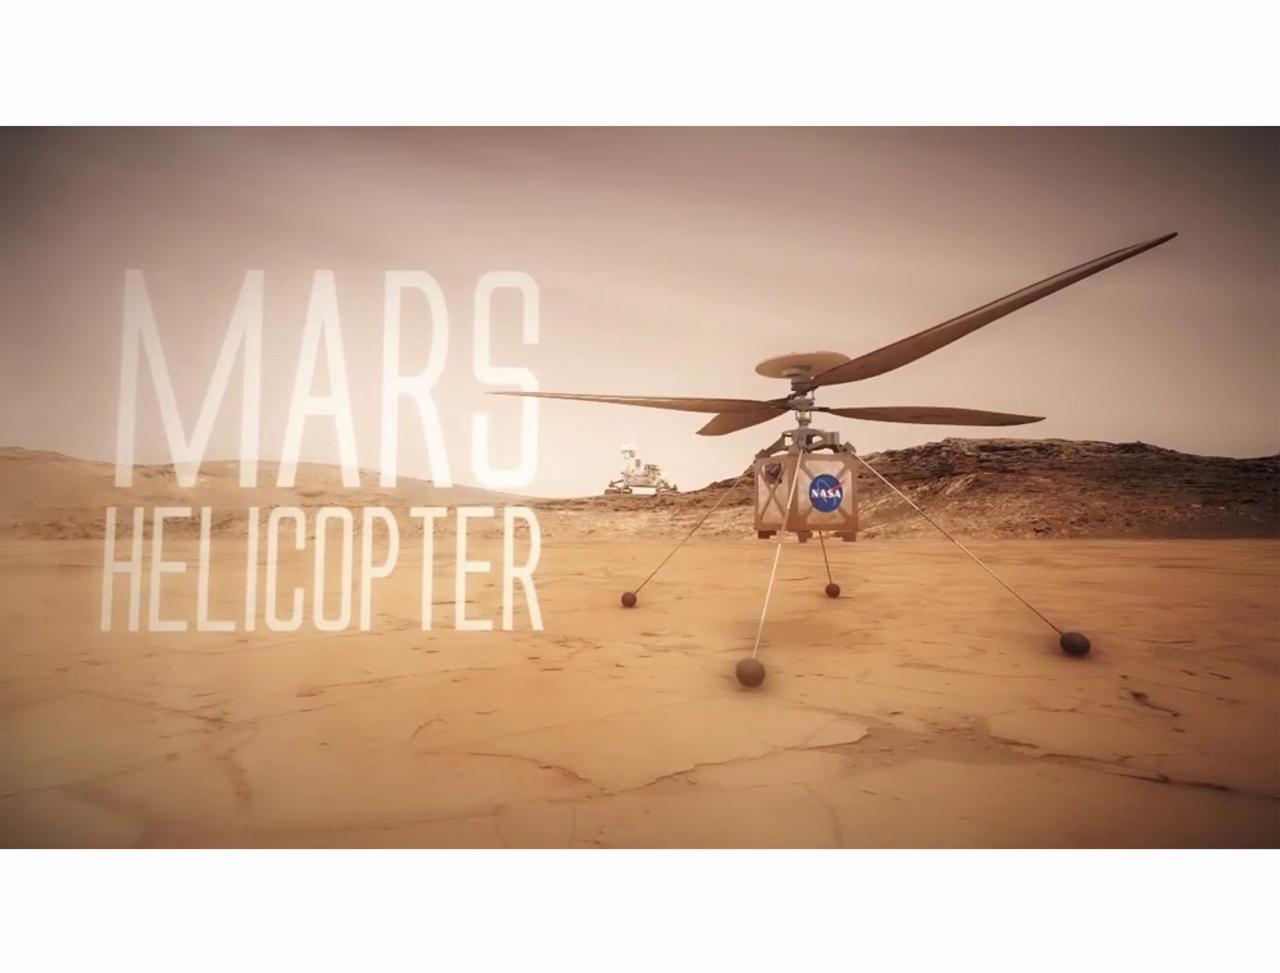 NASAが火星の上空写真を撮影するヘリコプターを開発中